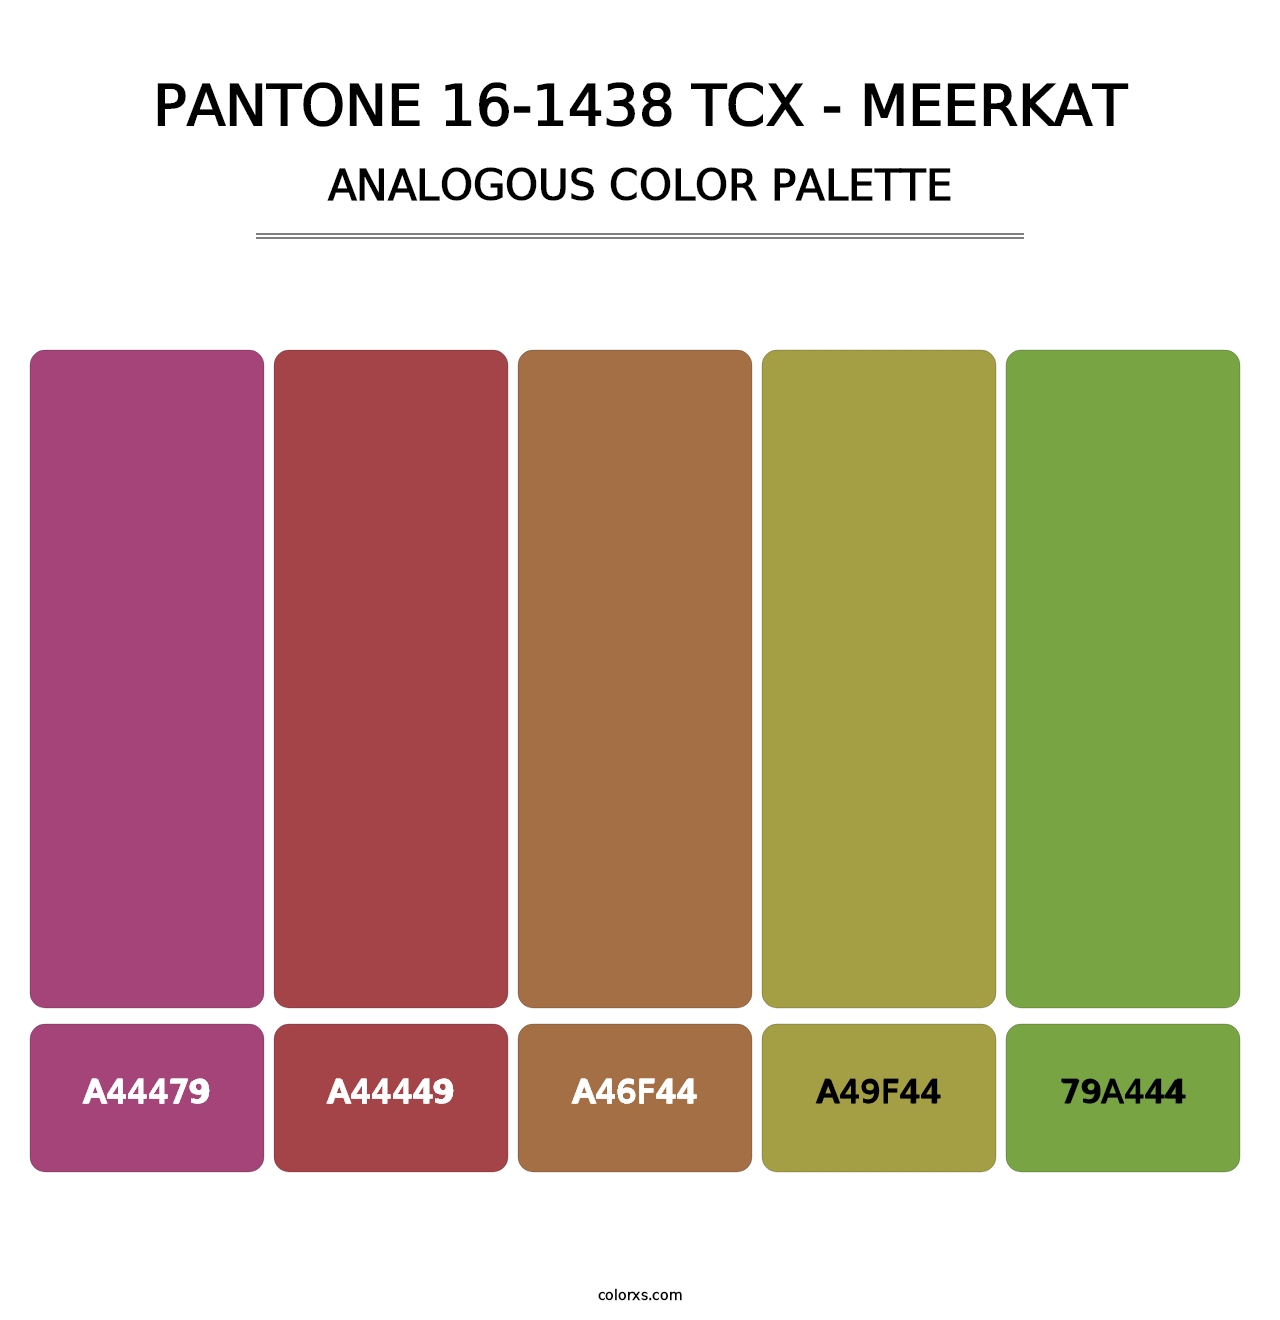 PANTONE 16-1438 TCX - Meerkat - Analogous Color Palette